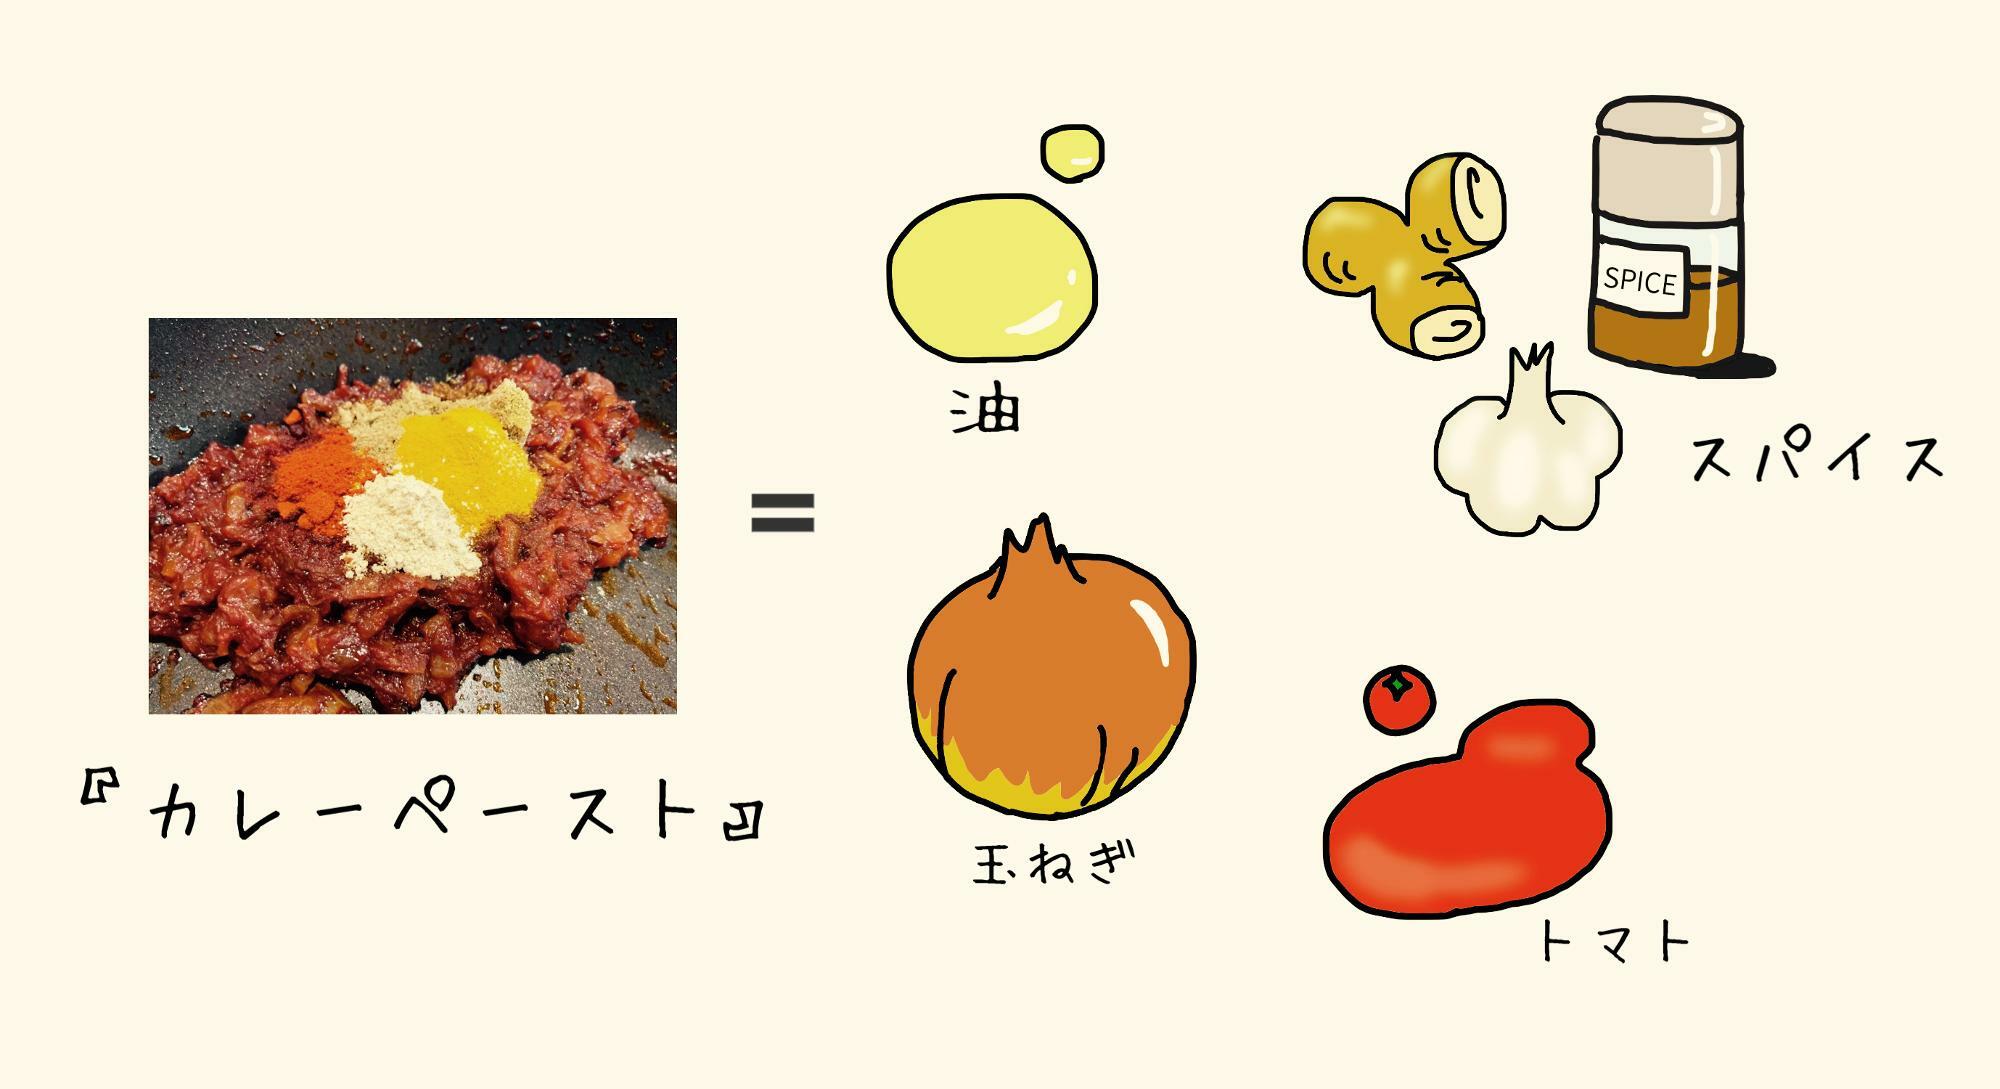 『カレーペースト』＝油＋スパイス＋玉ねぎ＋トマト